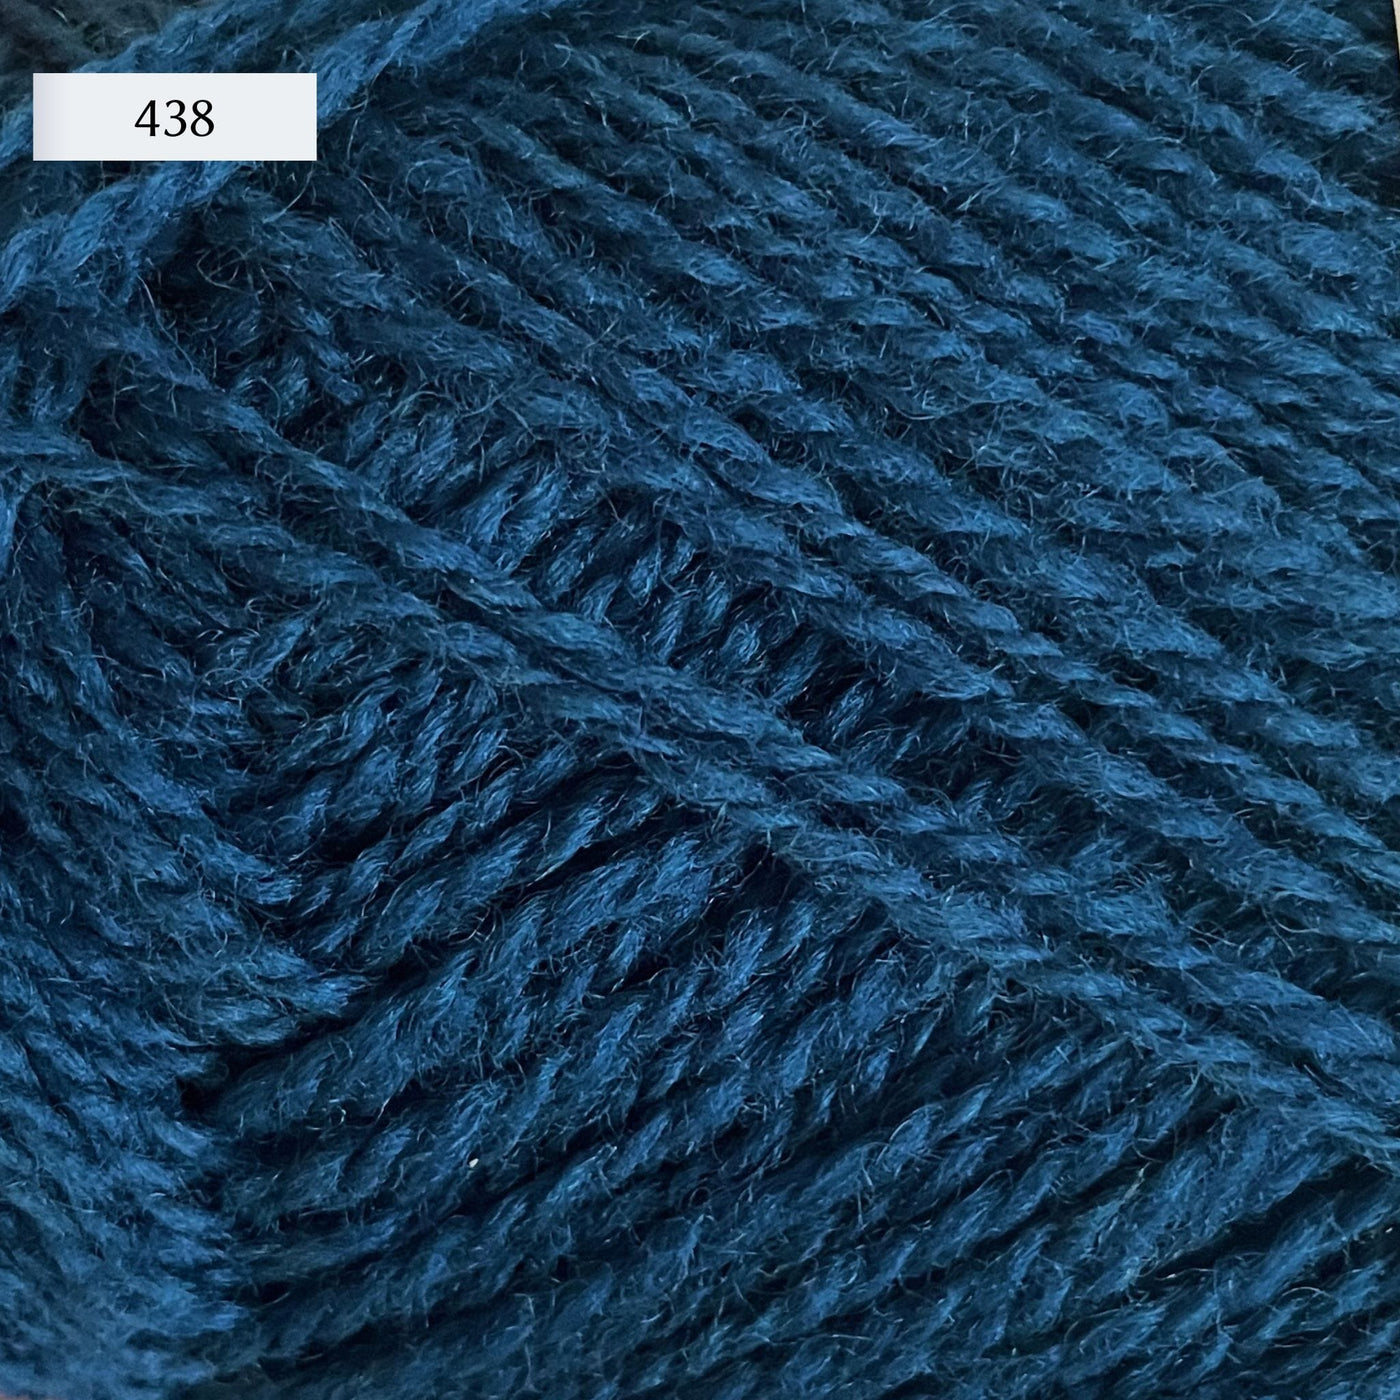 Rauma Finullgarn, a fingering/sport weight yarn, in color 438, a medium greenish blue